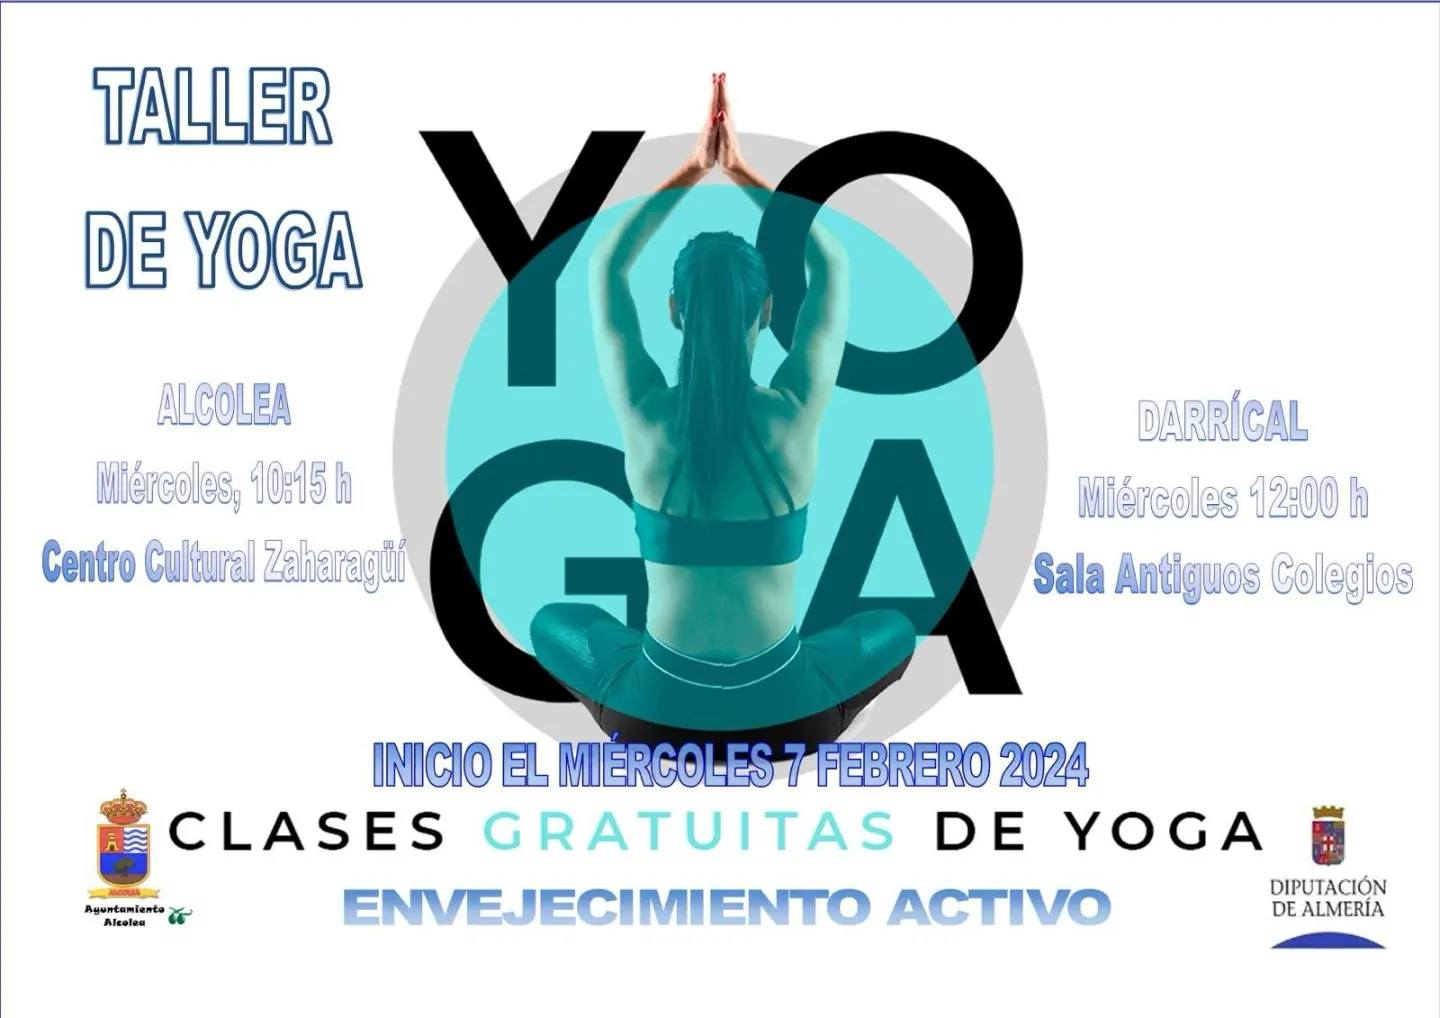 Clases Gratuitas de Yoga del Programa de Envejecimiento Activo